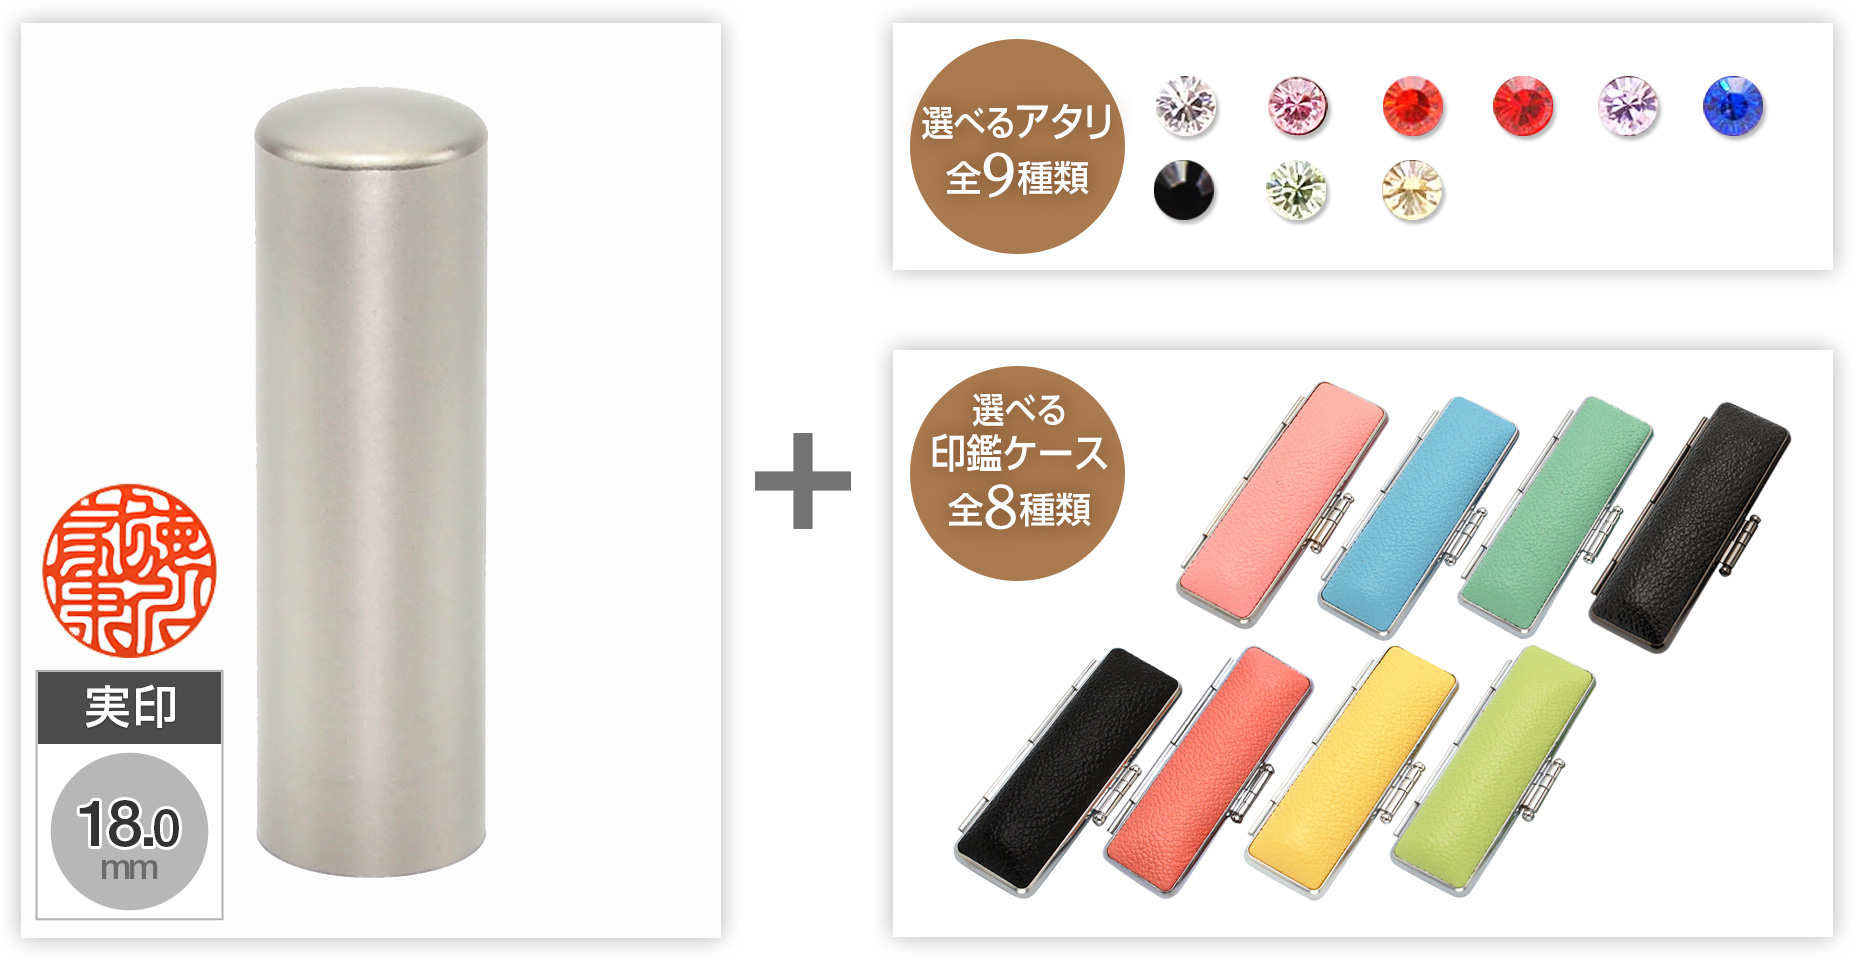 【セール】実印ブラストチタン18.0mm選べるアタリ・印鑑ケース セット